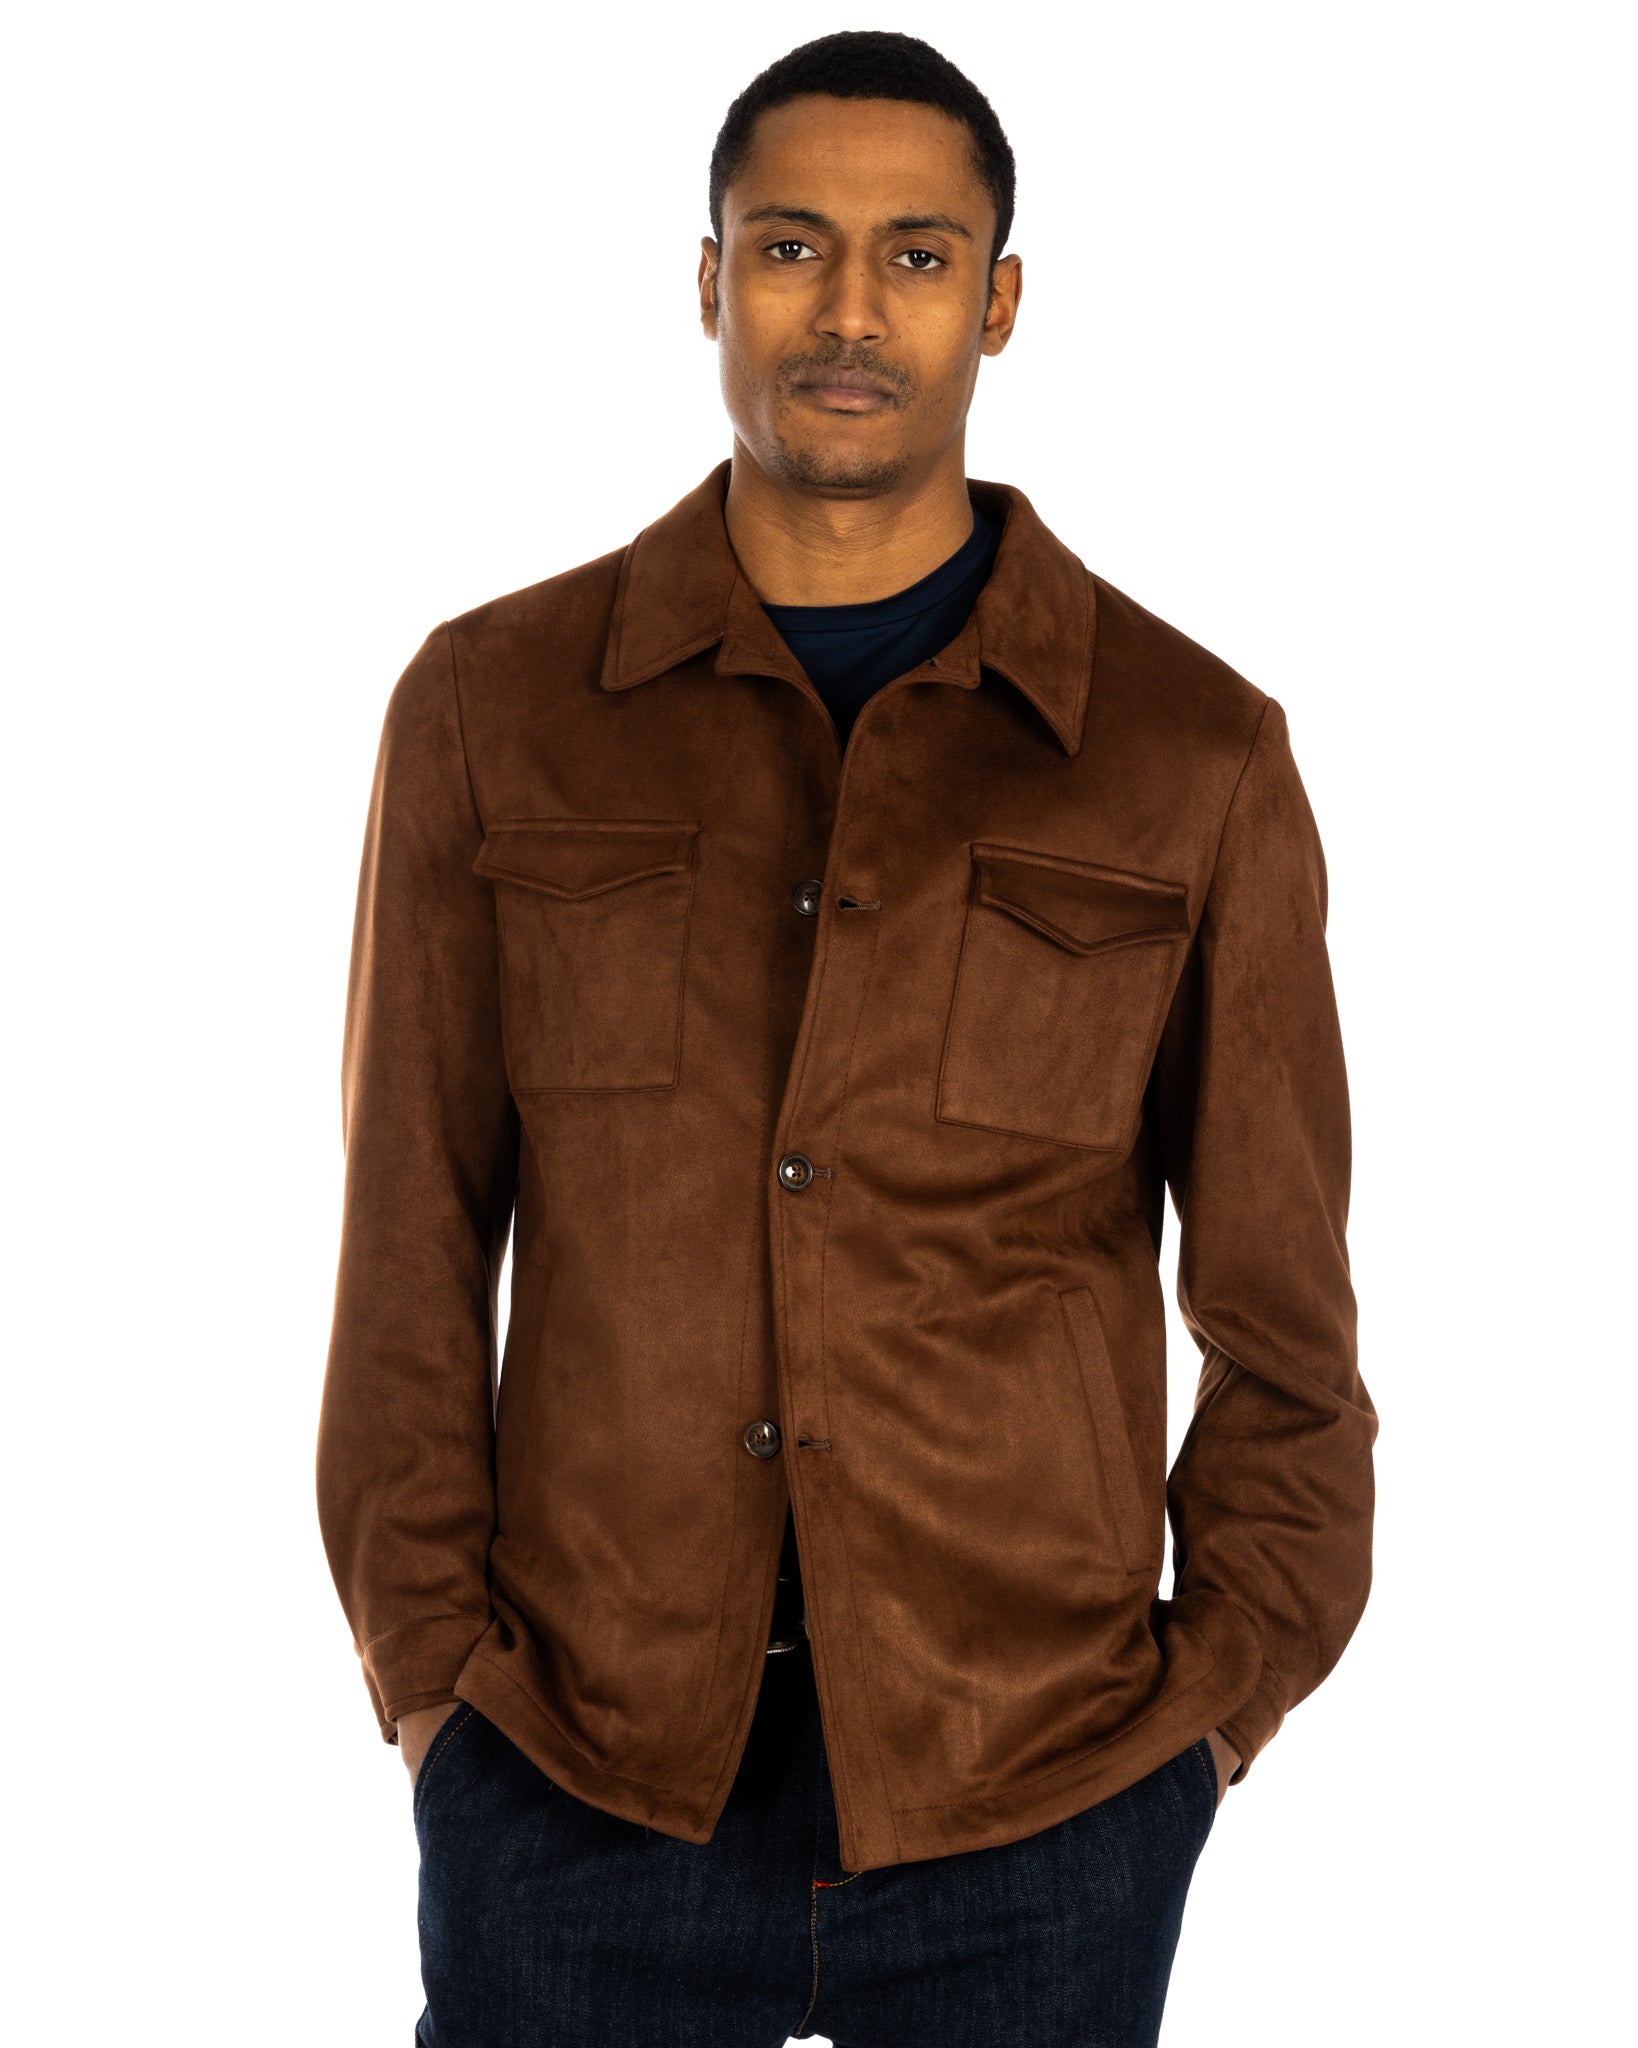 Meridion - dark brown suede jacket